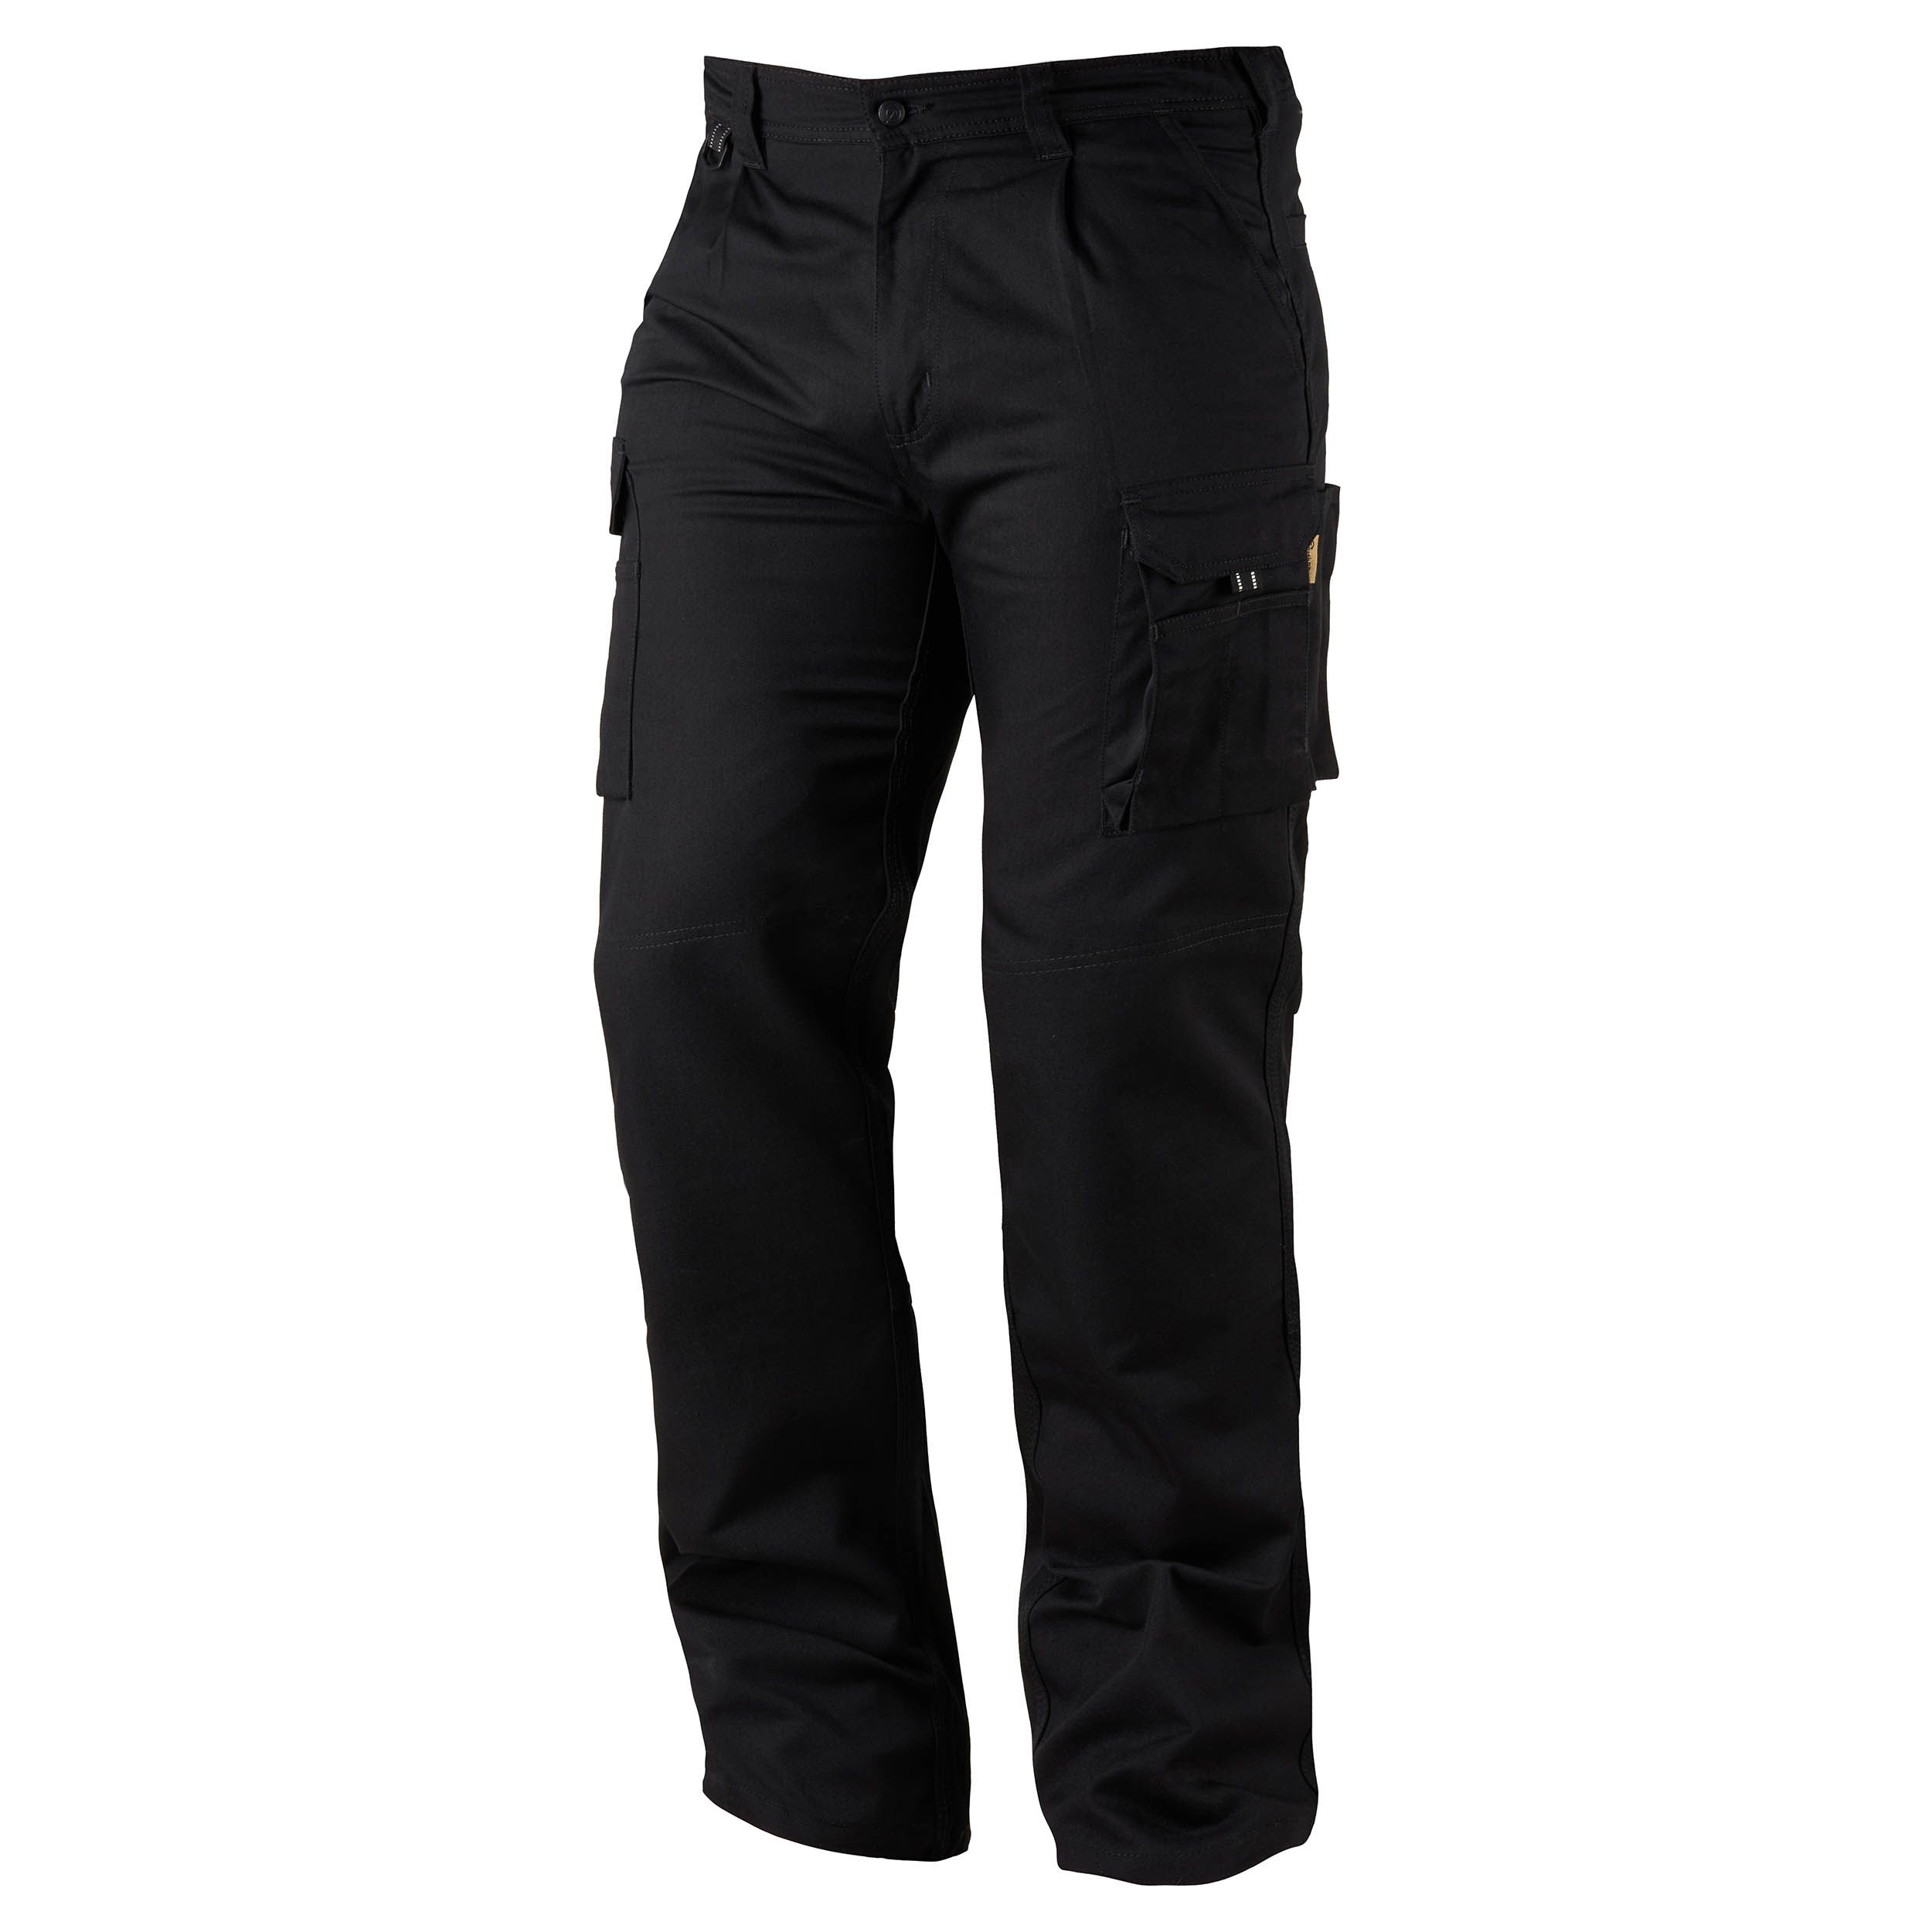 Pantalon de travail Orn Hawk EarthPro Combat Trouser, 71 → 76cm Homme, Noir en Coton, polyester recyclé,